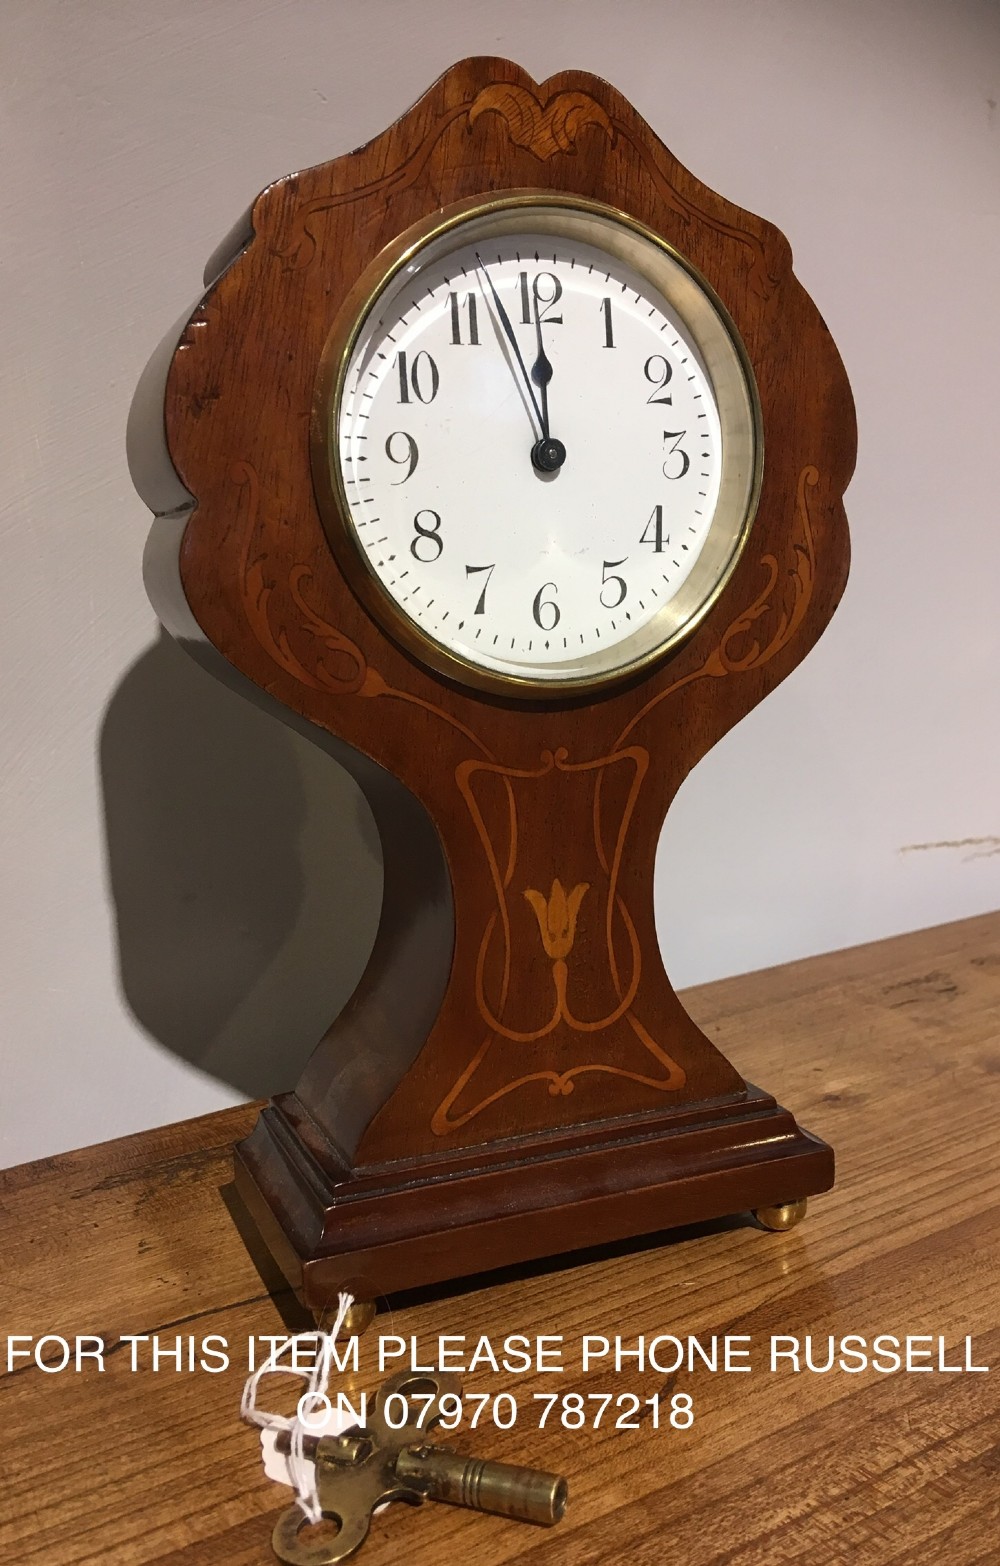 art nouveau mantel clock